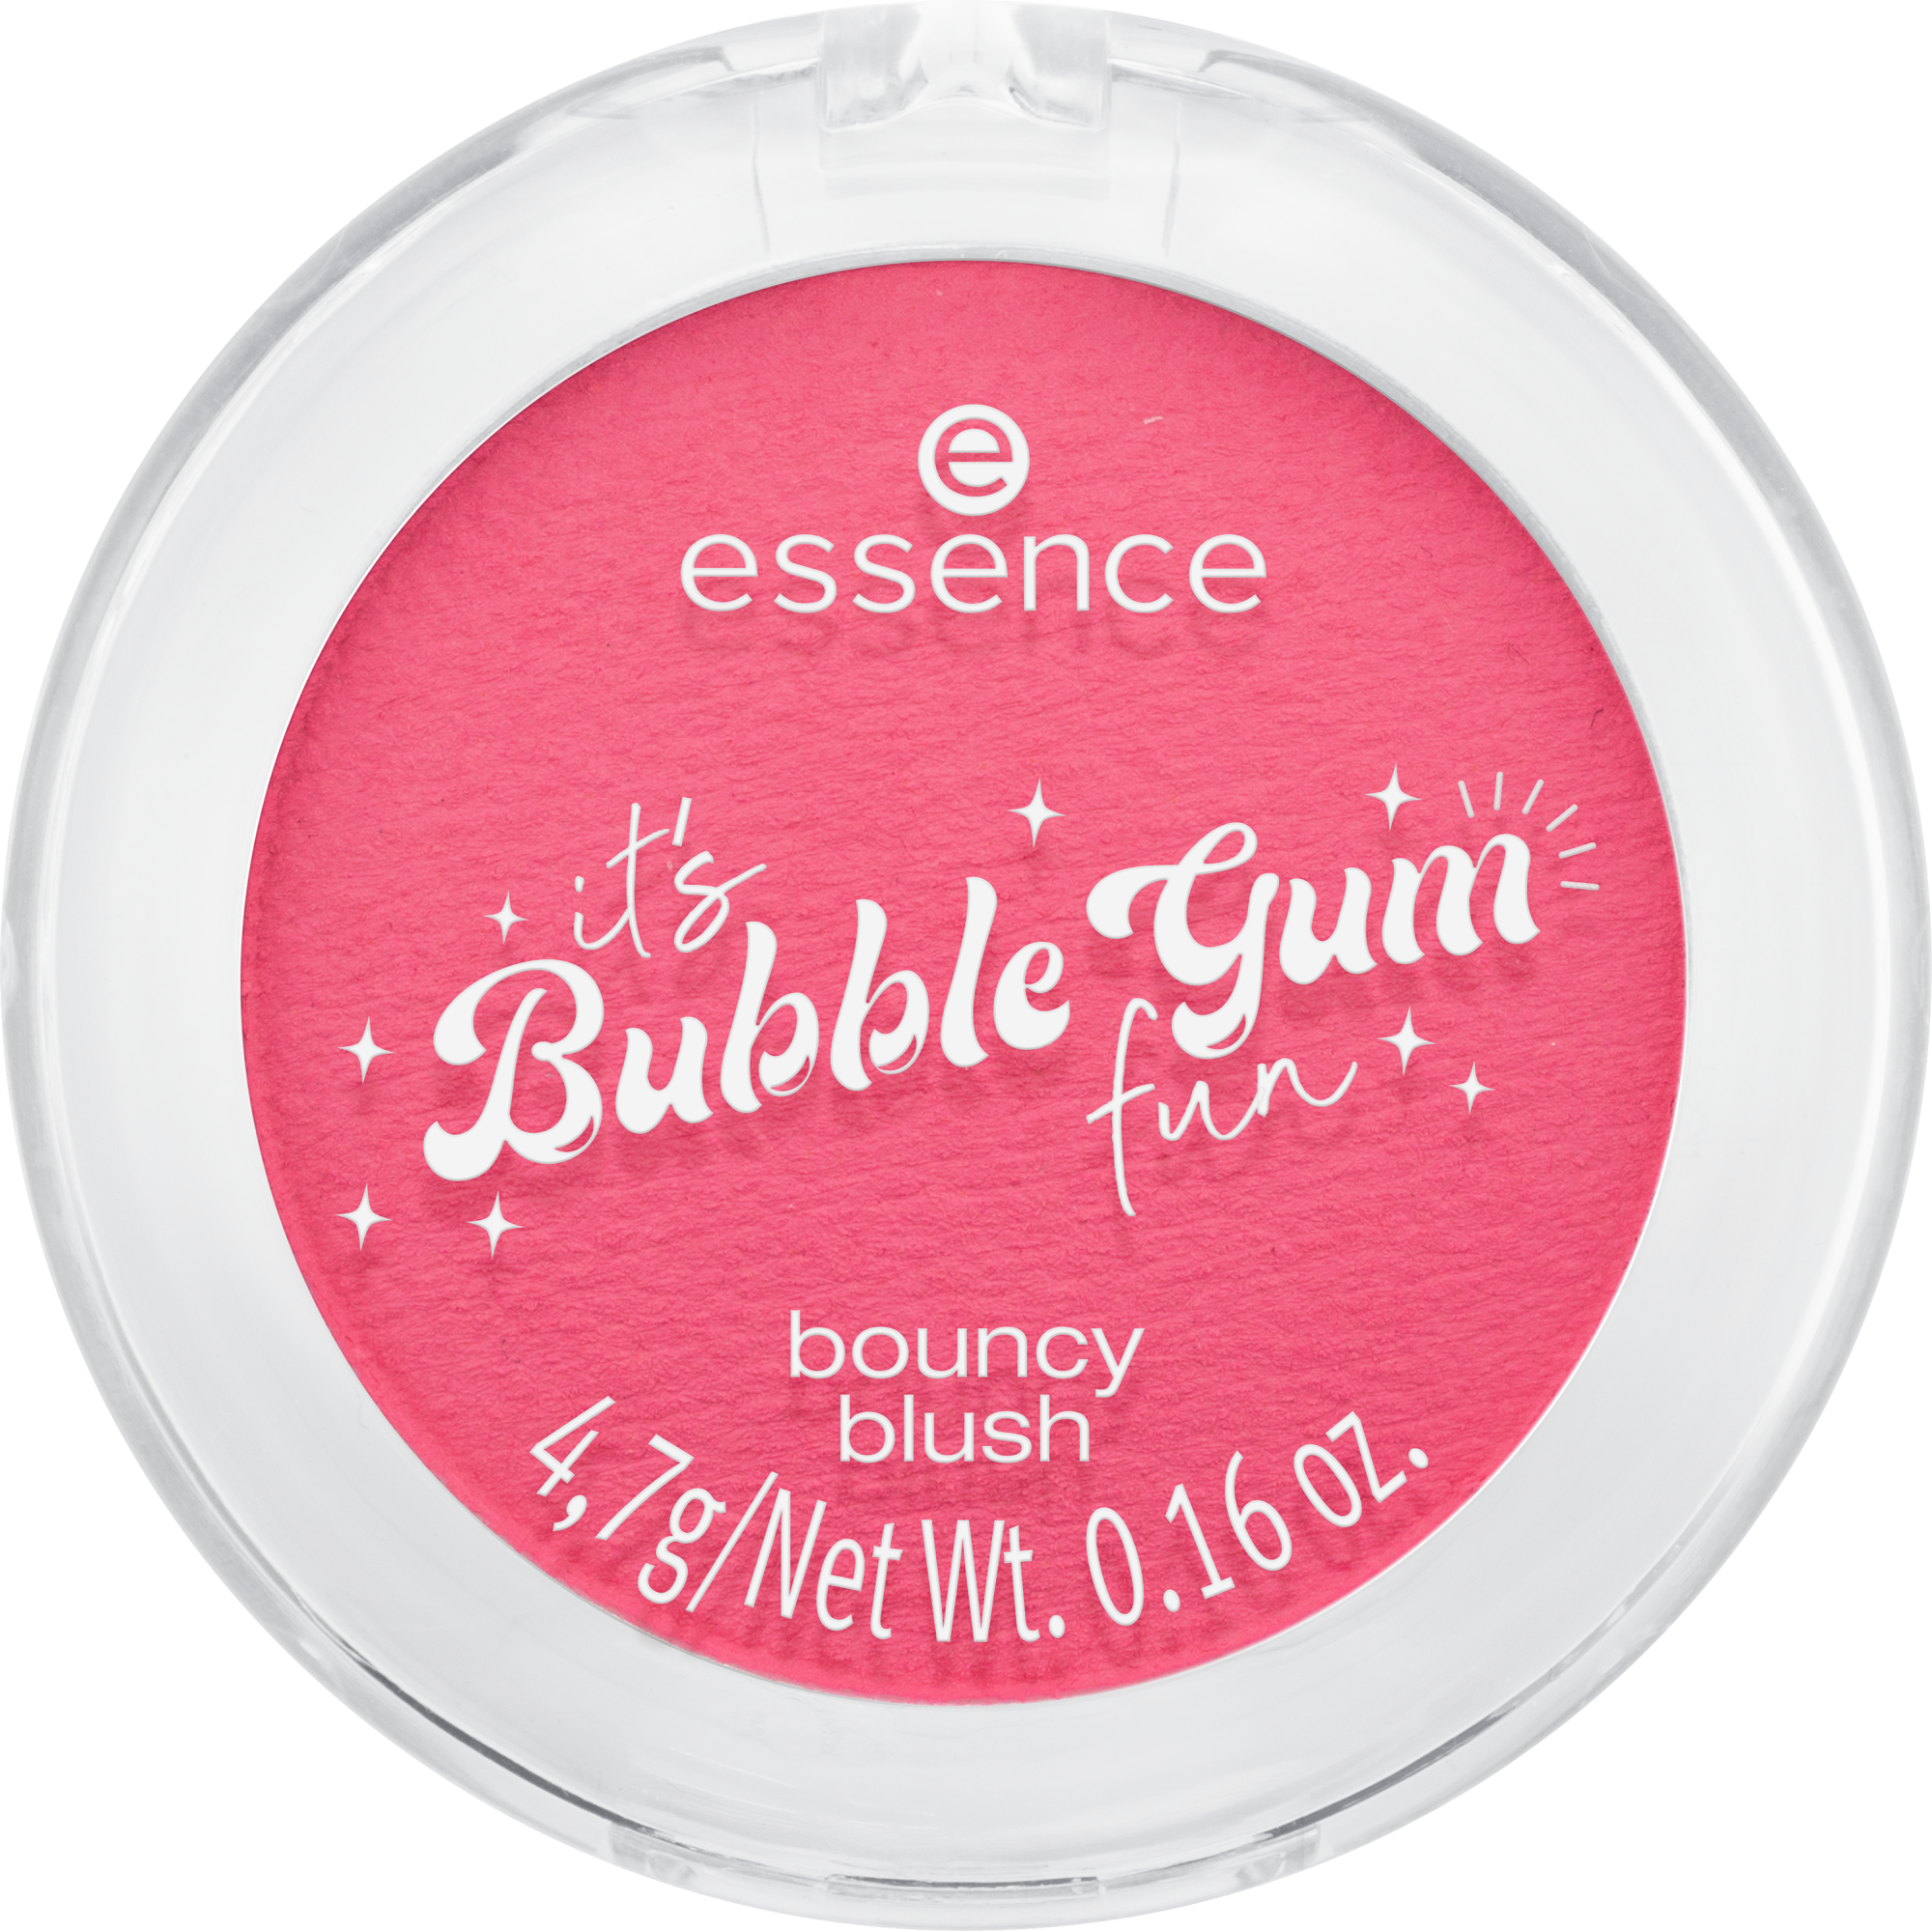 it's Bubble Gum fun bouncy rumenilo